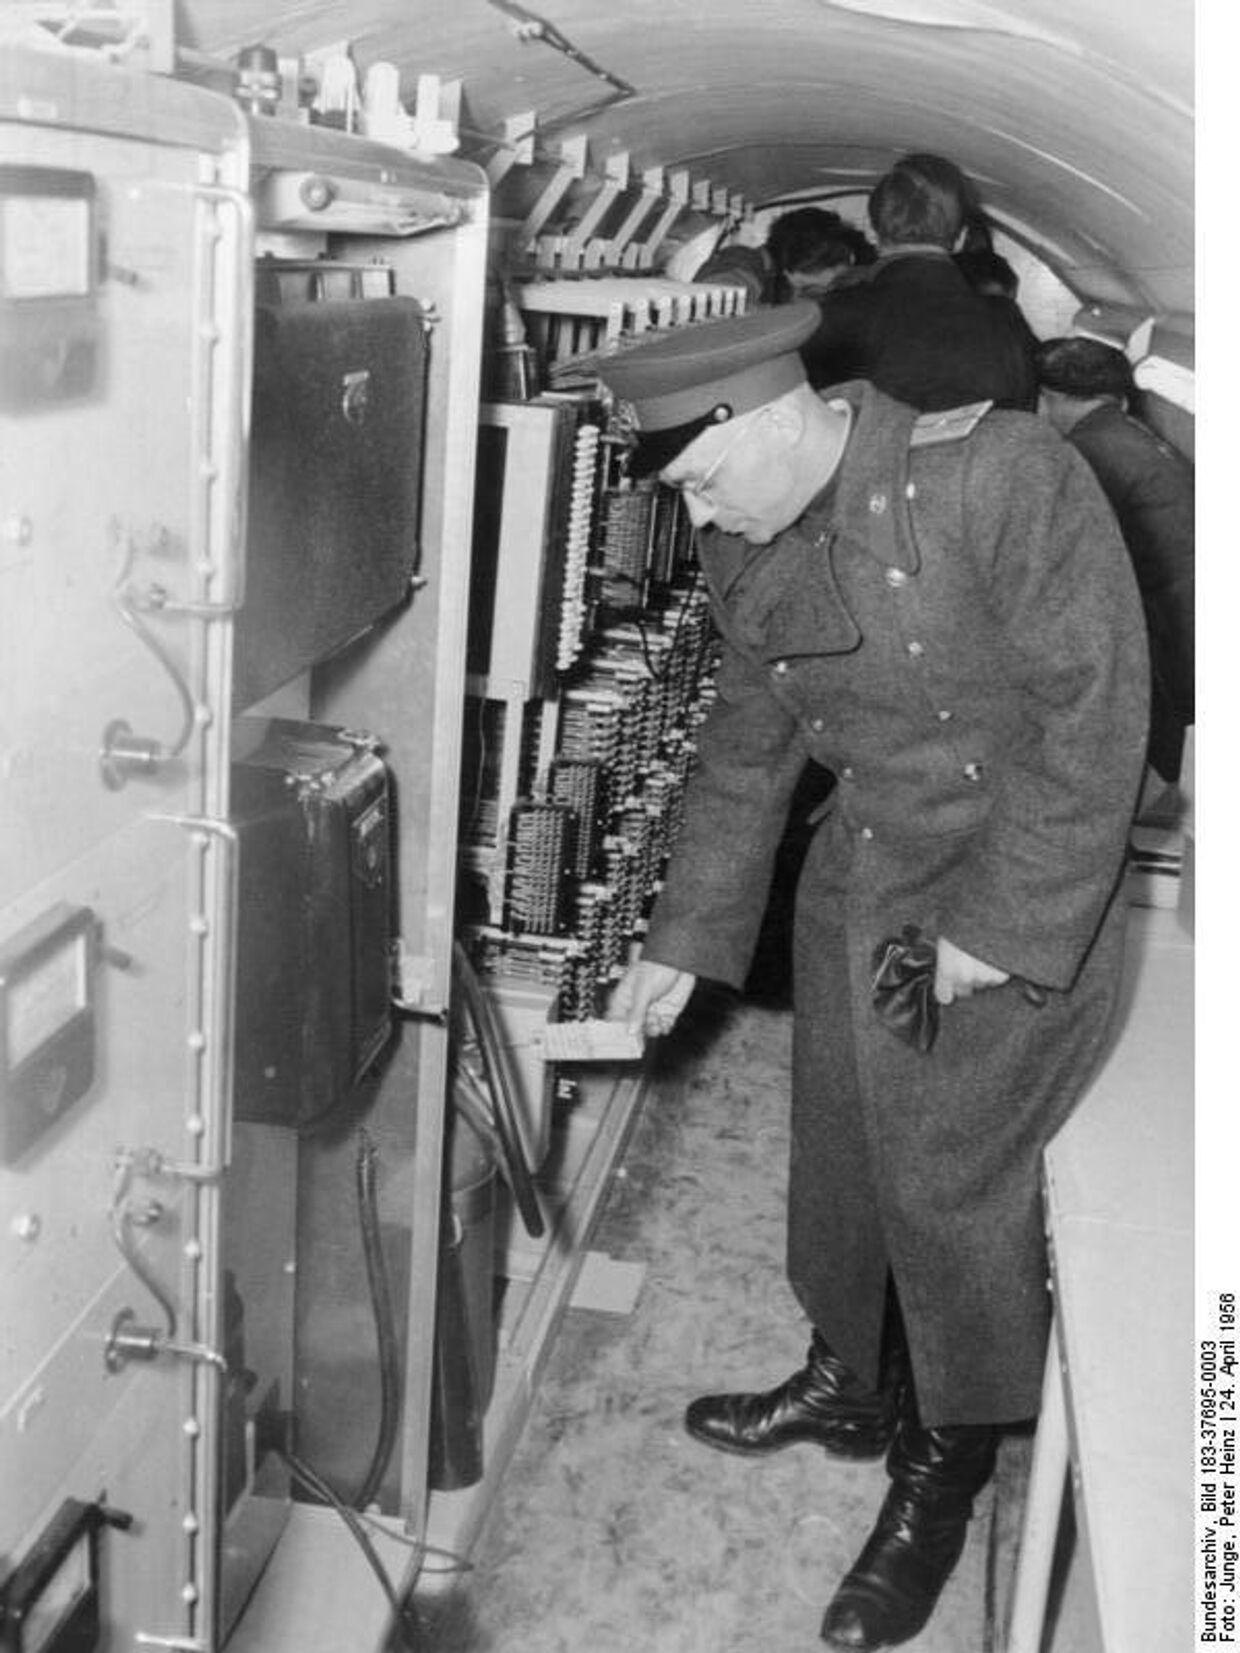 Офицер Группы советских войск в Германии указывает на английские надписи на оборудовании в обнаруженном туннеле под Берлином